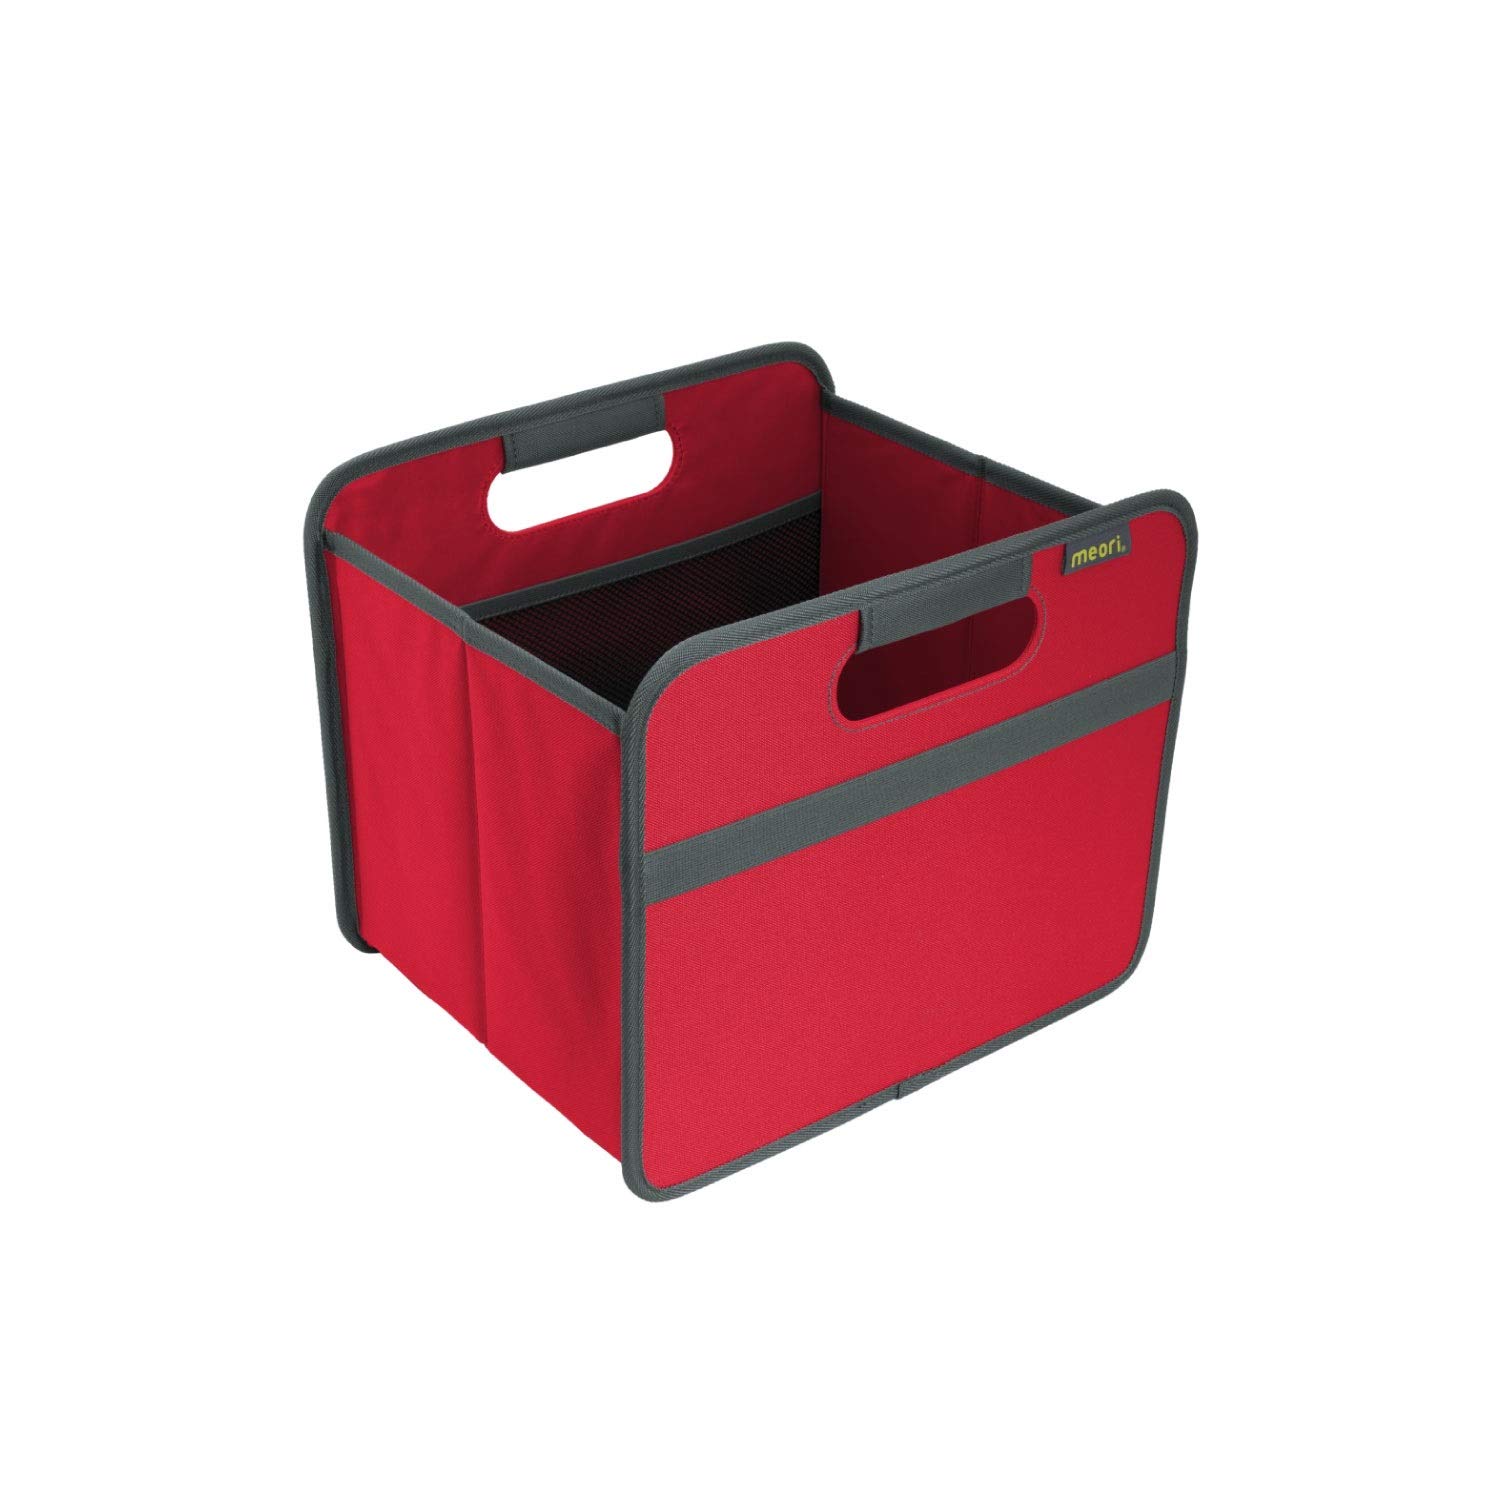 meori Faltbox Small in Rot - Stabile Klappbox S mit Griffen - perfekte Allzweck Aufbewahrungslösung - Tragkraft bis 30 kg - A100062 - 32 x 26,5 x 27,5 cm